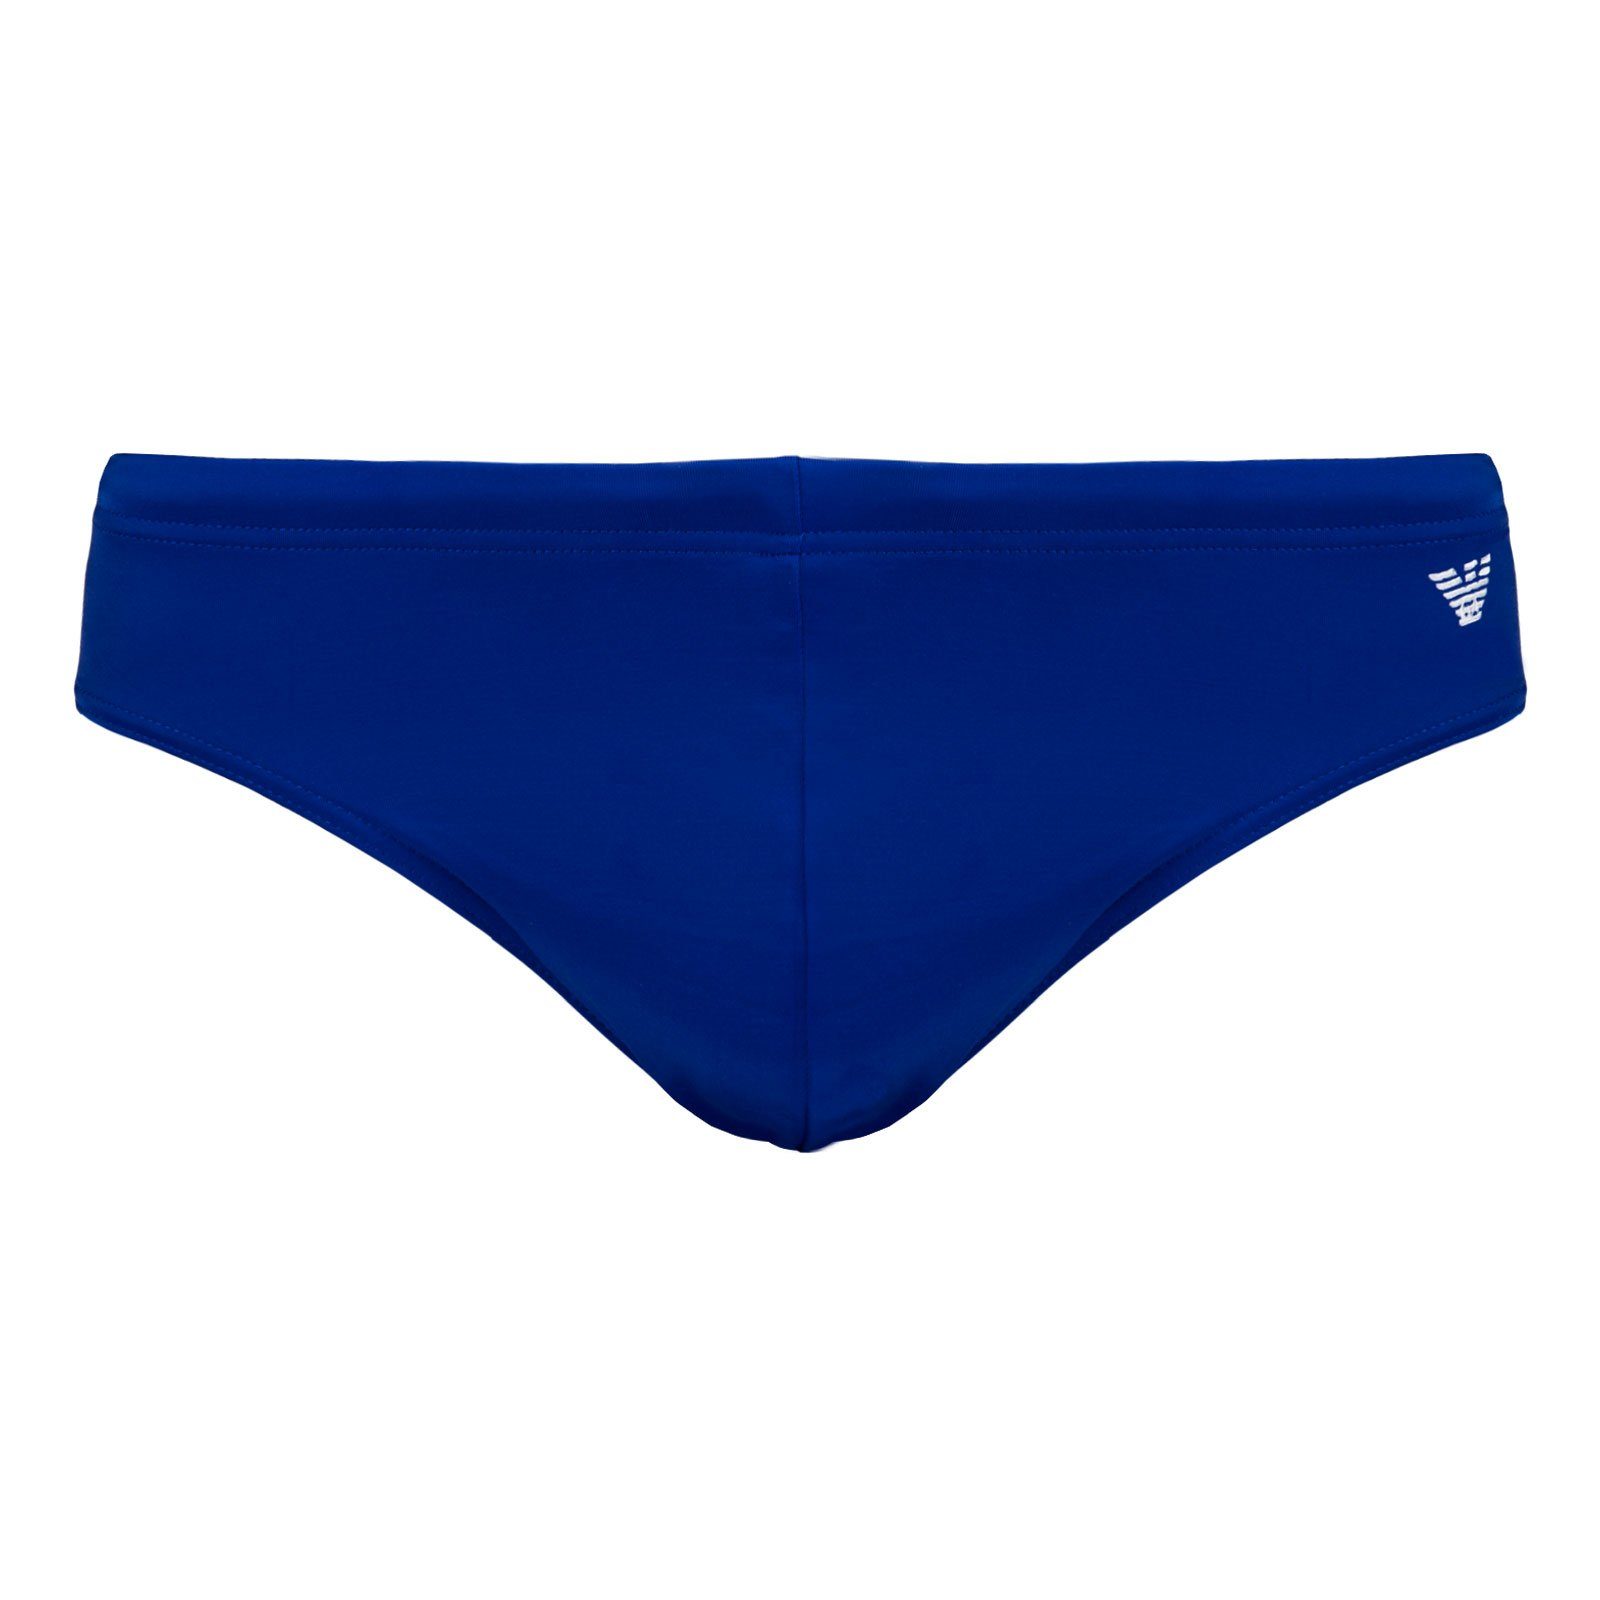 Emporio Armani Badeslip »Brief Beachwear« mit Adler-Logo auf der linken  Hüfte und dem Gesäß online kaufen | OTTO